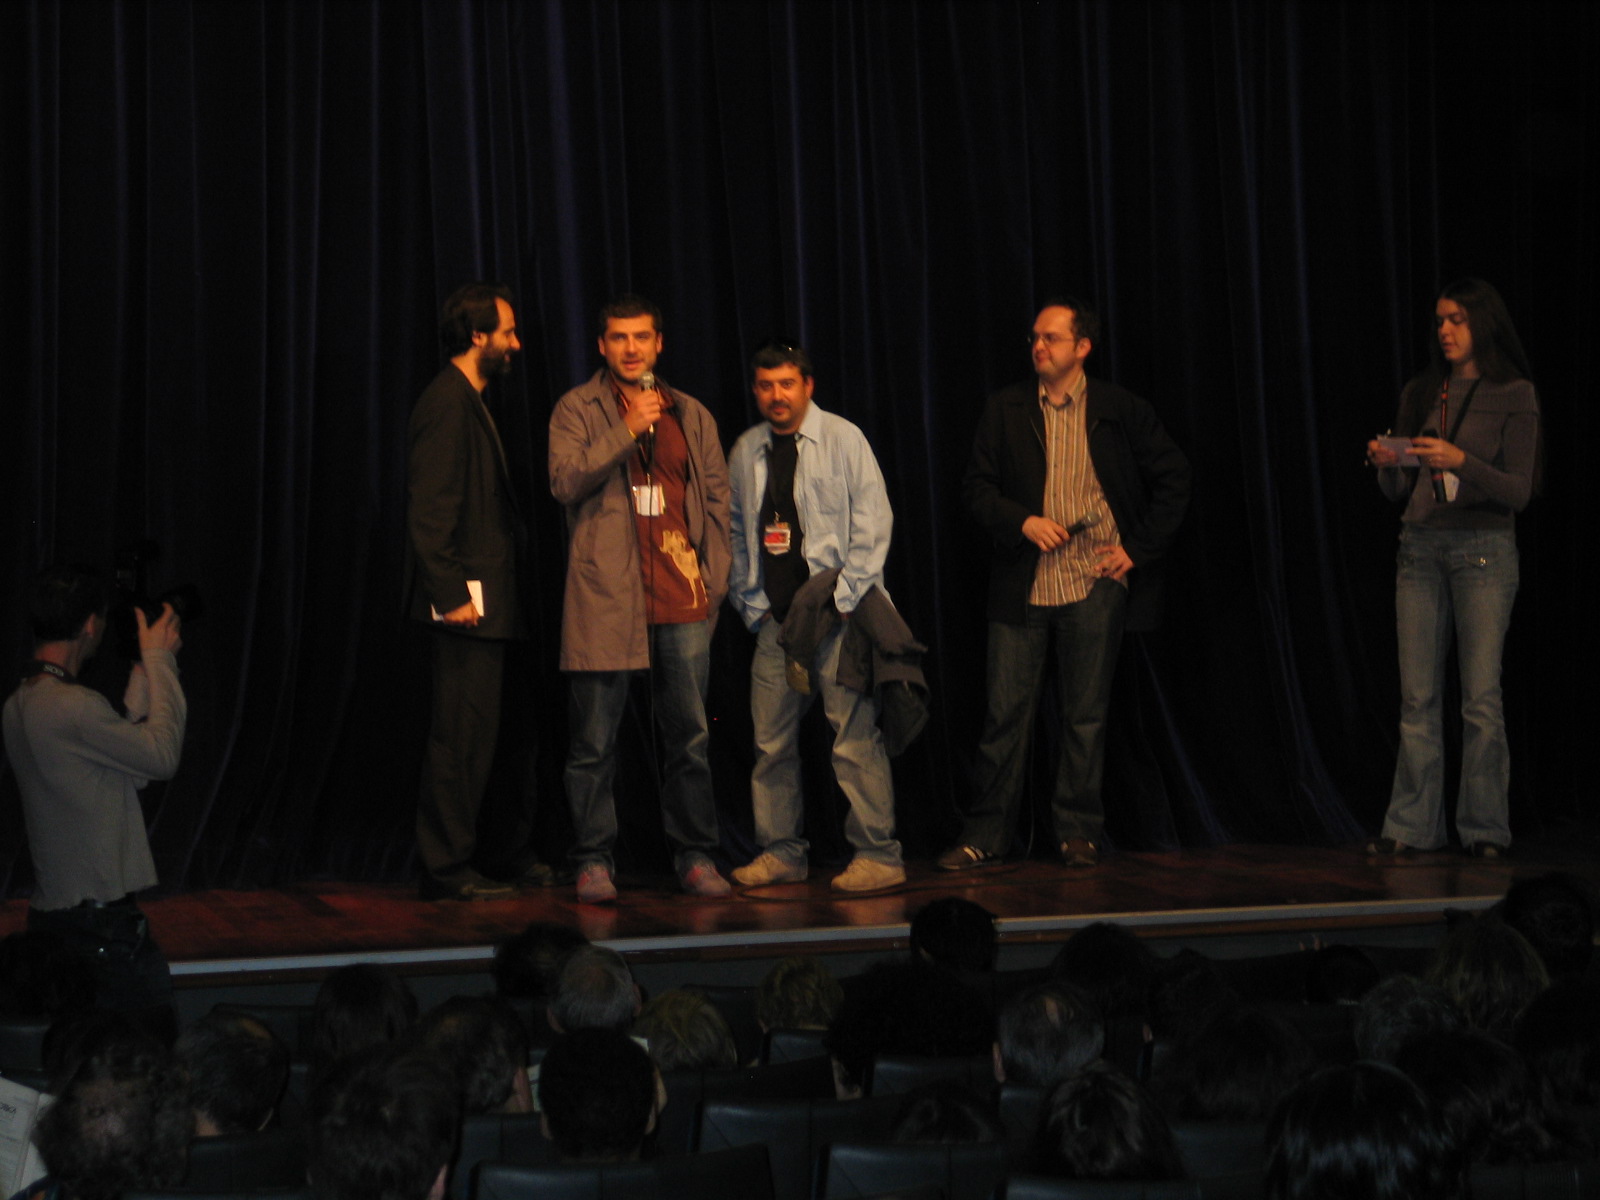 Dimitar Mitovski, Kamen Kalev,Jean-Christophe Berjon, Bernard Payen - Cannes Film Festival 2005 , Semaine de la Critique